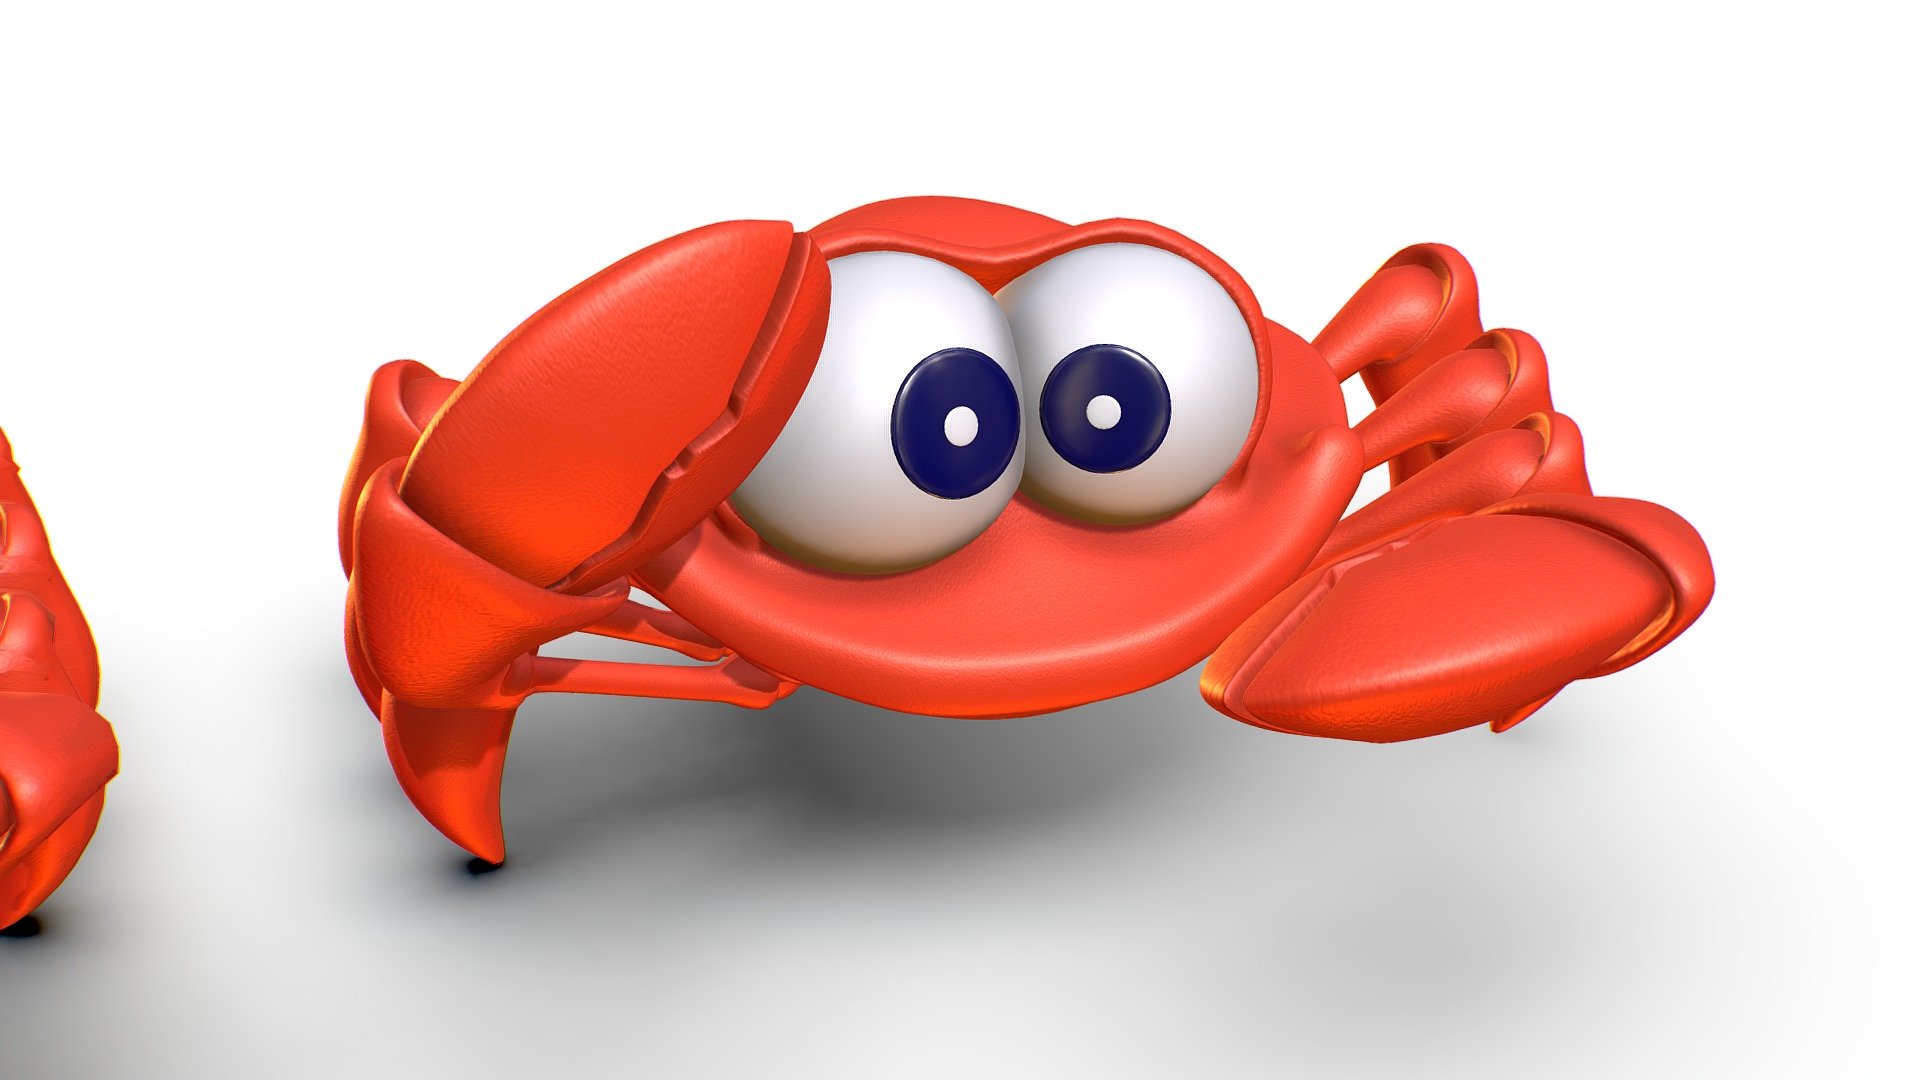 Hi-Poly Subdivision 3D Model Crab - Maya File encluded - Hi-Poly Subdivision 3D Model Crab - Buy Royalty Free 3D model by Oleg Shuldiakov (@olegshuldiakov) 3d model